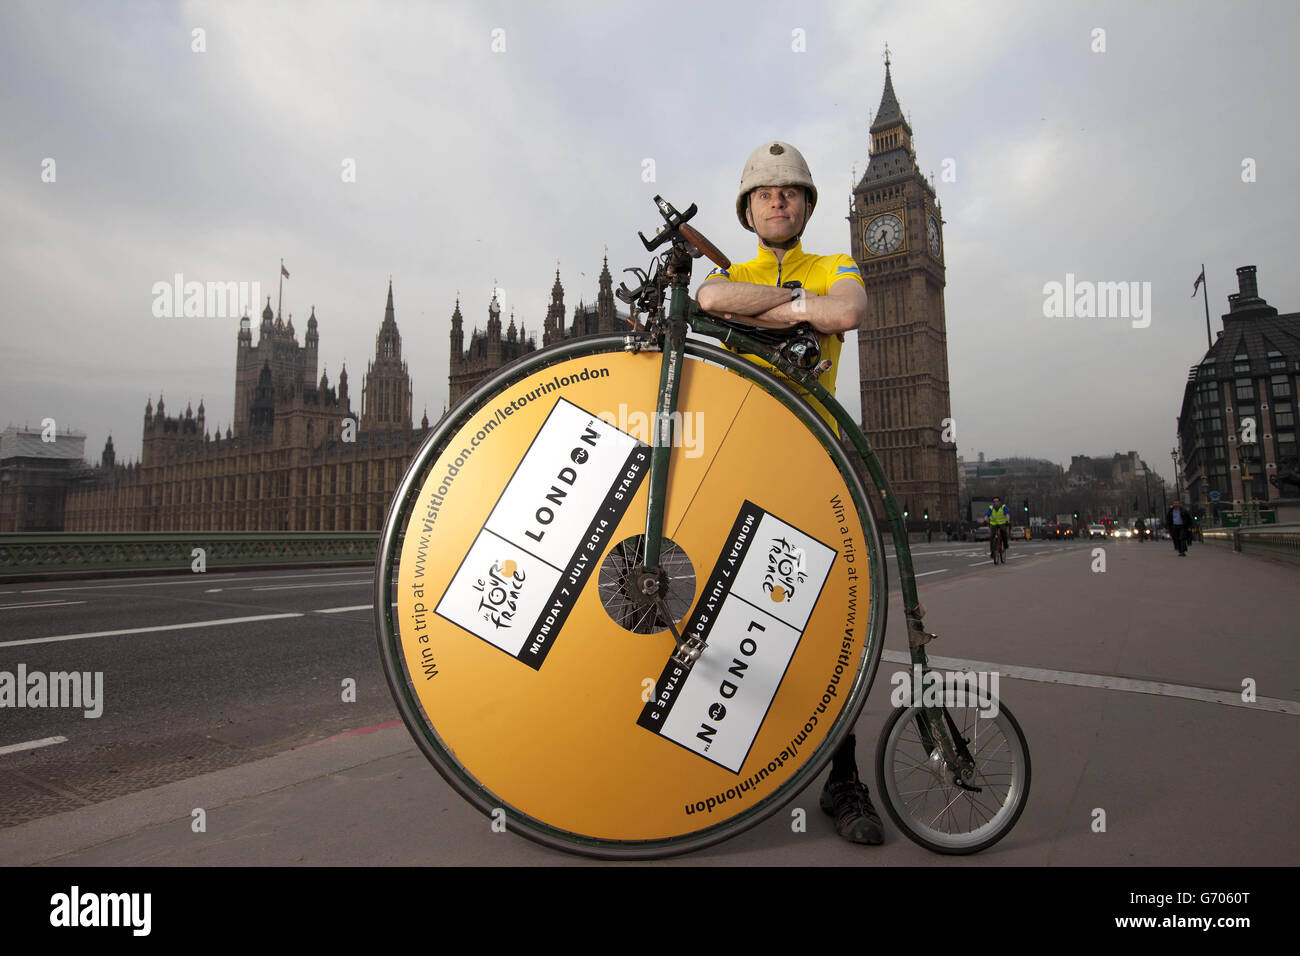 Joff Summerfield, da Greenwich nel sud-est di Londra, si erge con la sua penny farthing sul Westminster Bridge nel centro di Londra, durante il suo allenamento prima di partecipare ai classici di primavera di quest'anno, per celebrare il Tour de France che arriverà a Londra il 7 luglio. Foto Stock